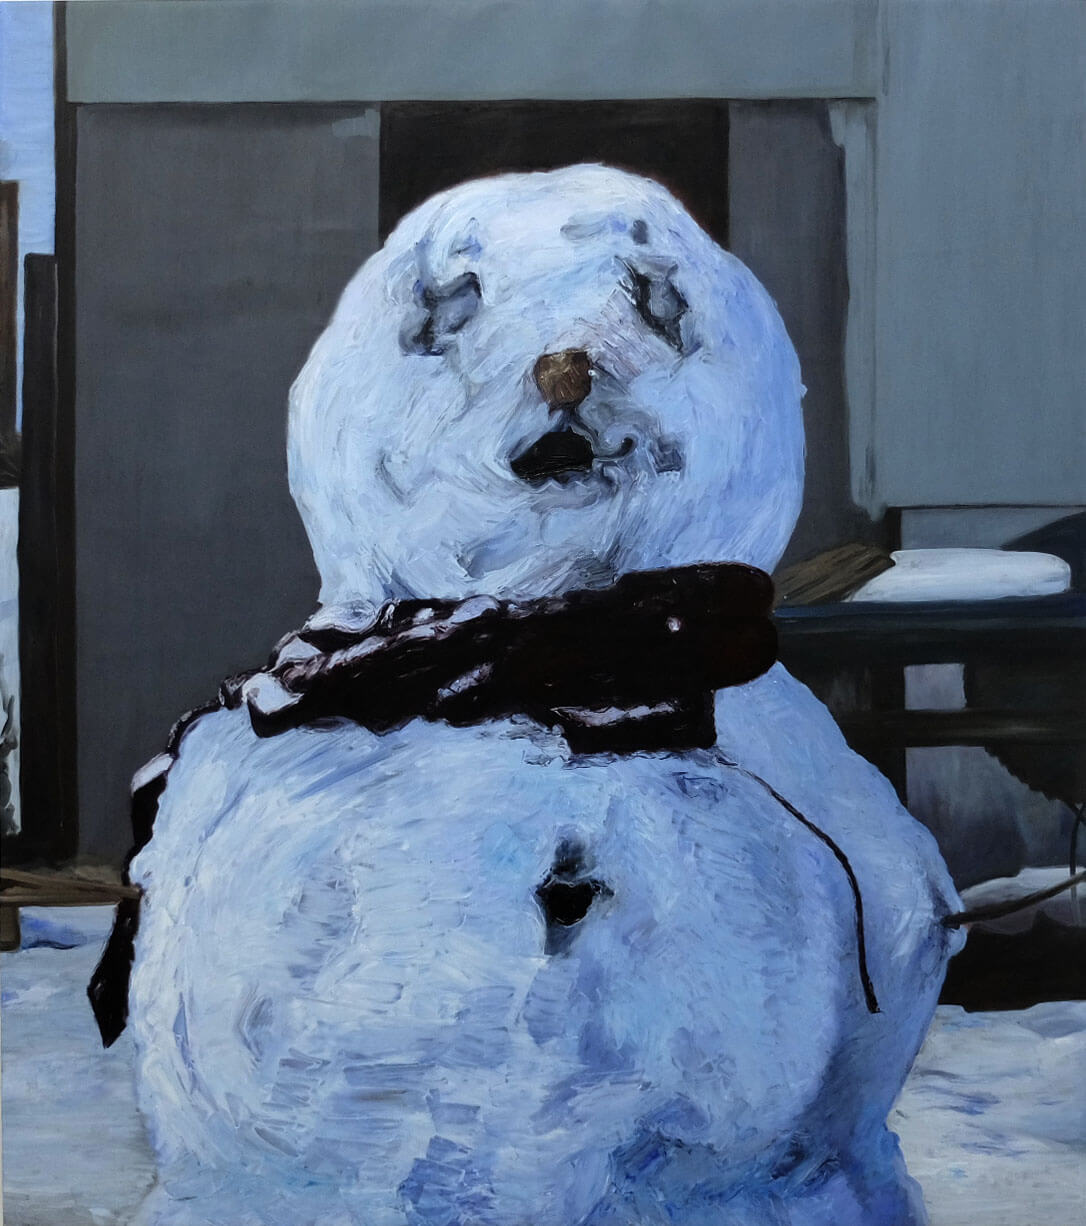 Snowman, oil on canvas, 170x150cm 2017